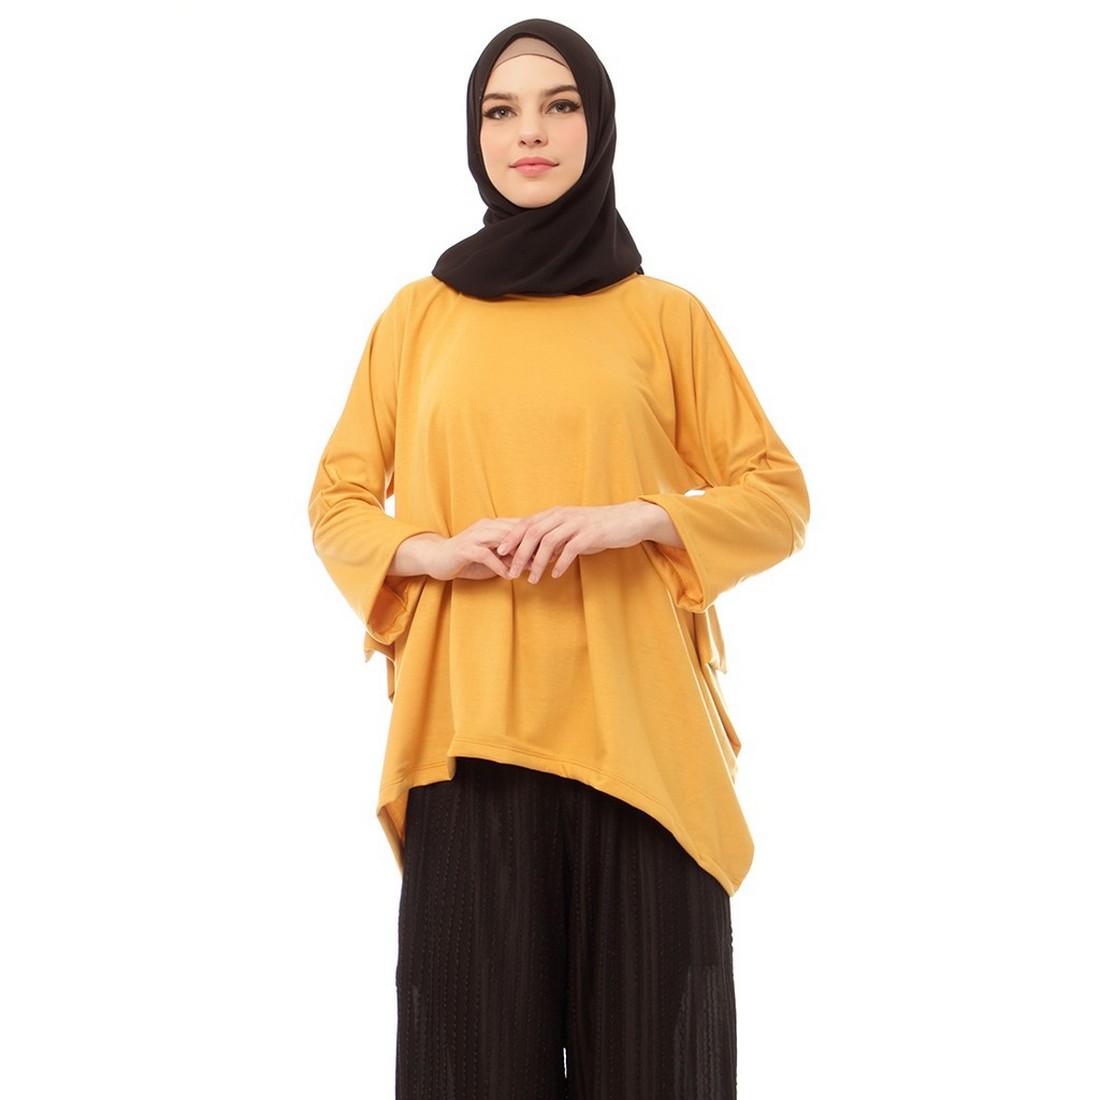 Mybamus Flary Top Mustard M14269 R65S3 - Baju Muslim - Pakaian Muslim Wanita - Atasan Muslim Wanita Lengan Panjang - Tunic Wanita